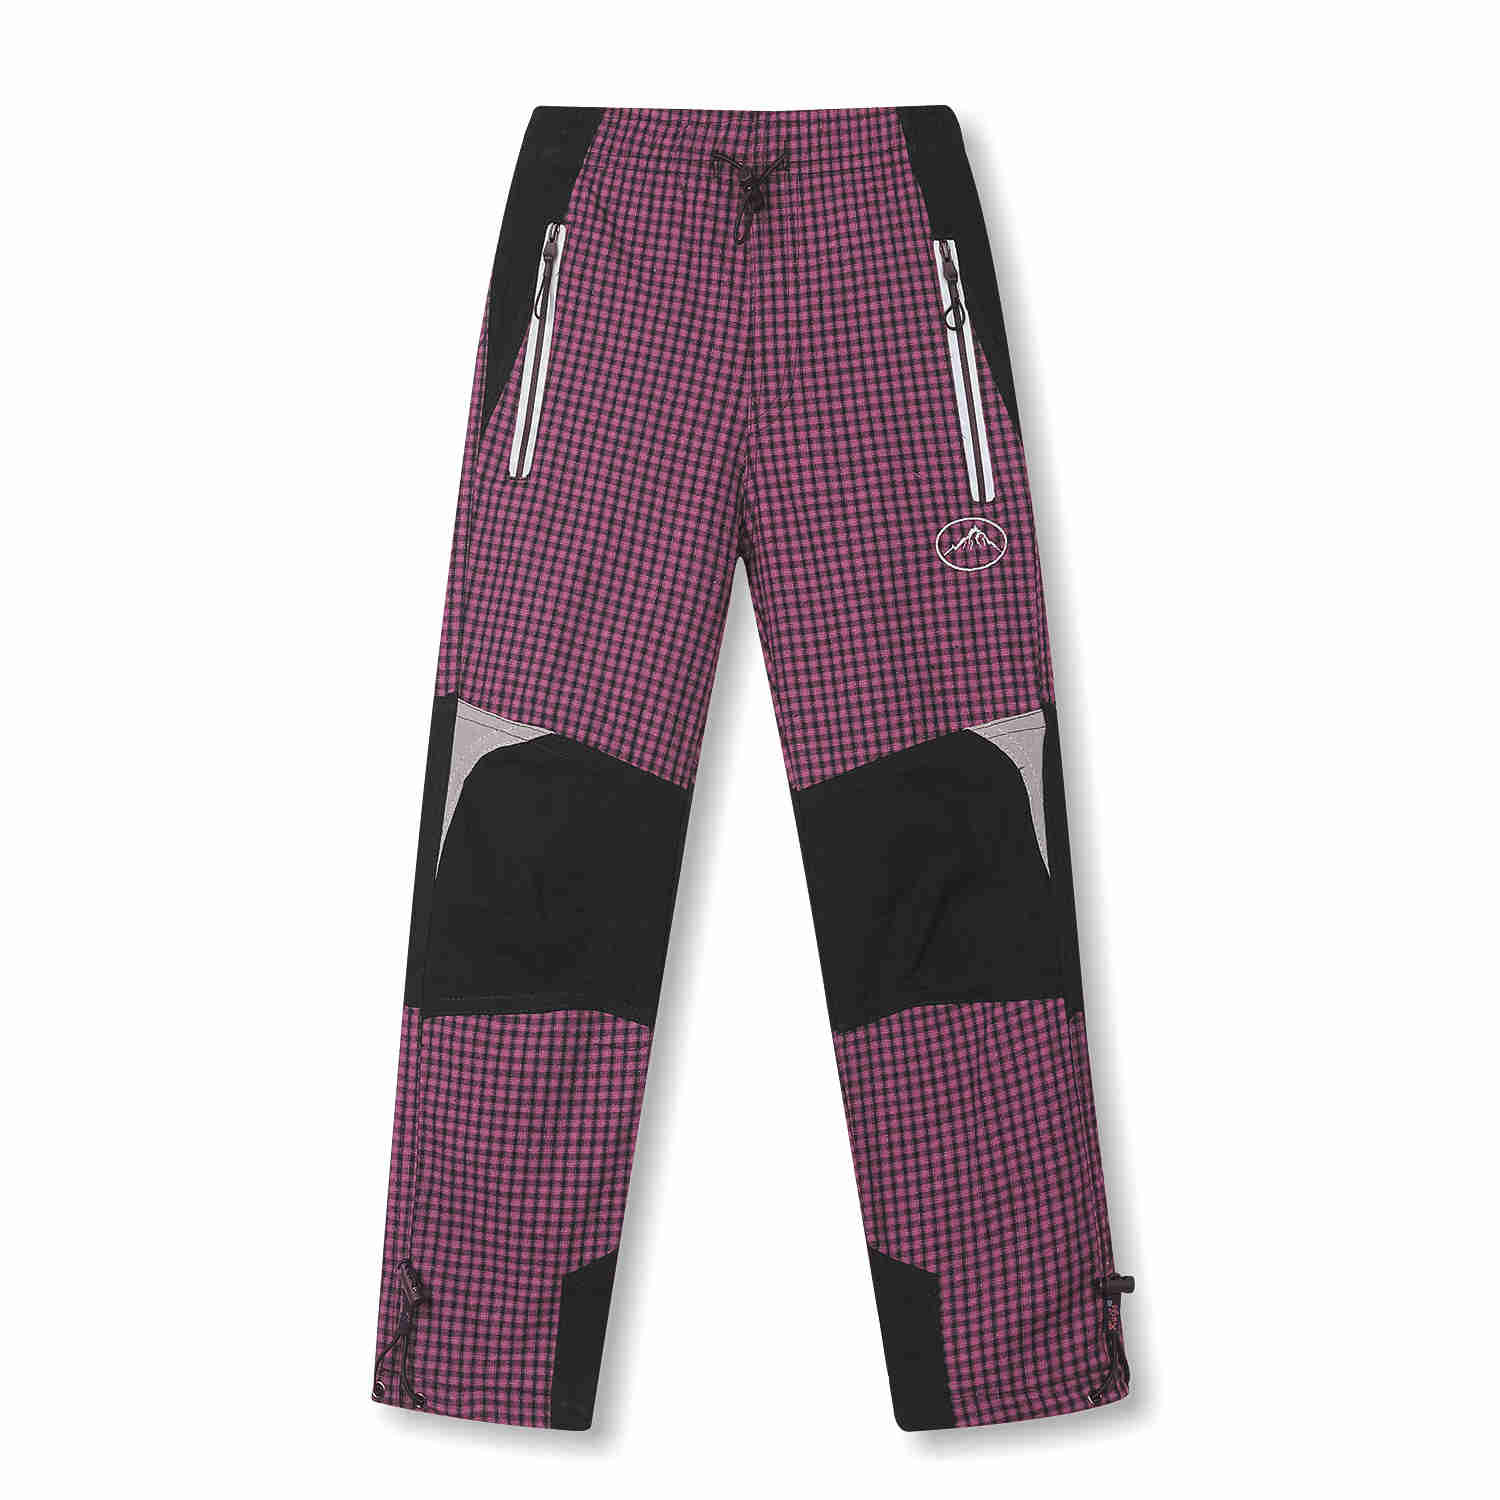 Dívčí plátěné kalhoty - KUGO FK6660, růžová Barva: Růžová, Velikost: 98